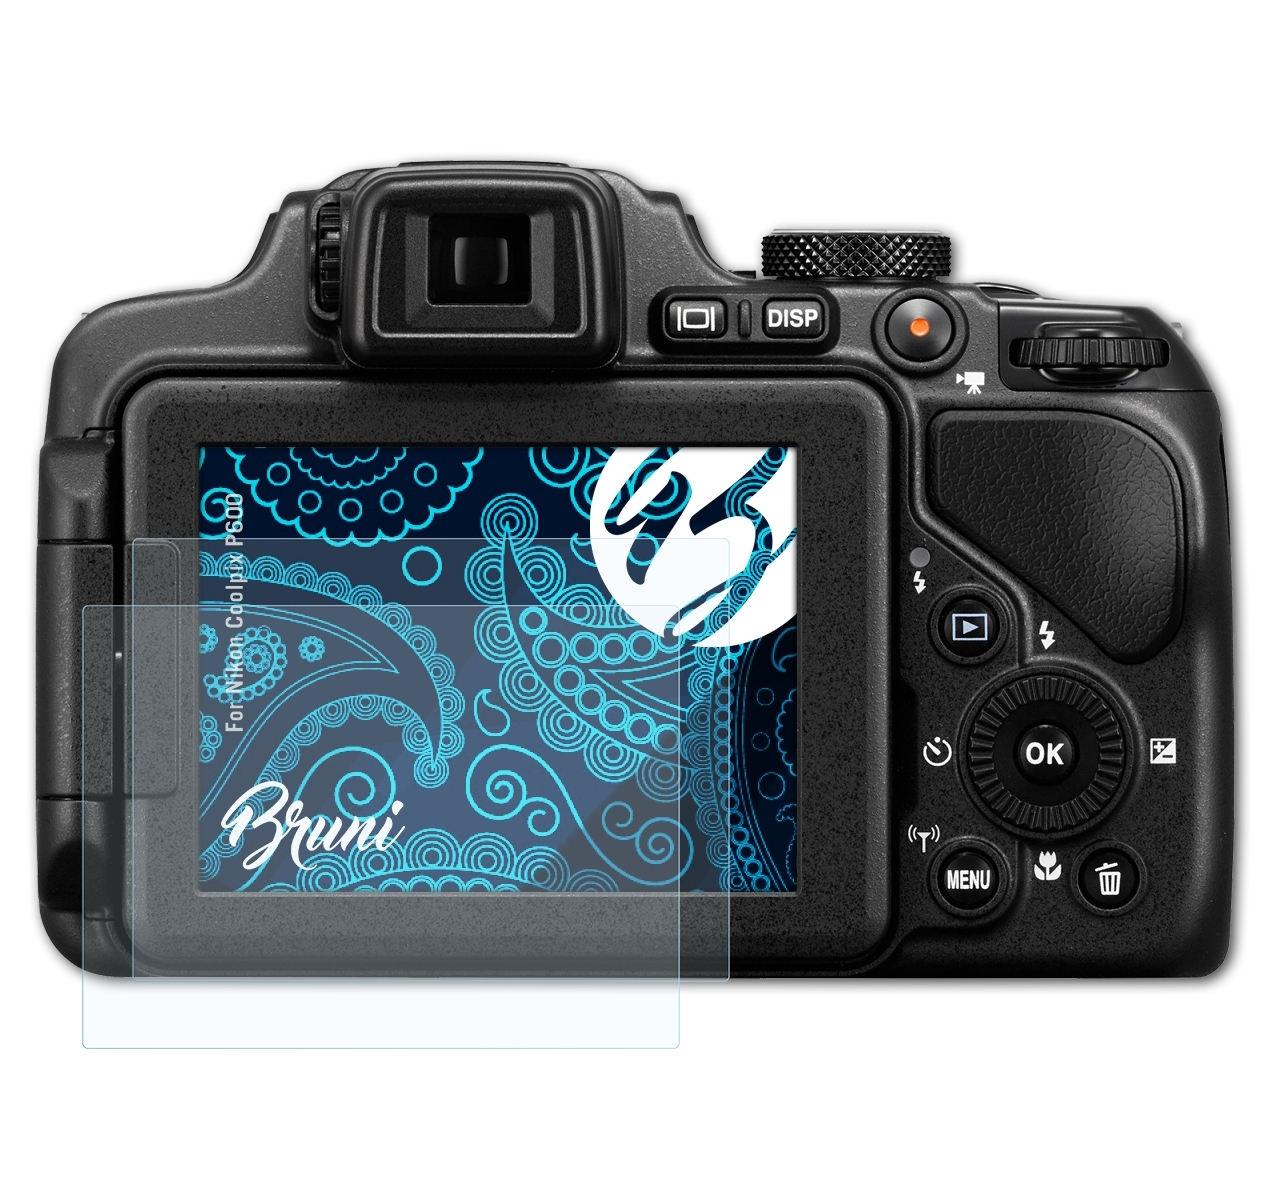 BRUNI 2x Basics-Clear Coolpix Schutzfolie(für P600) Nikon